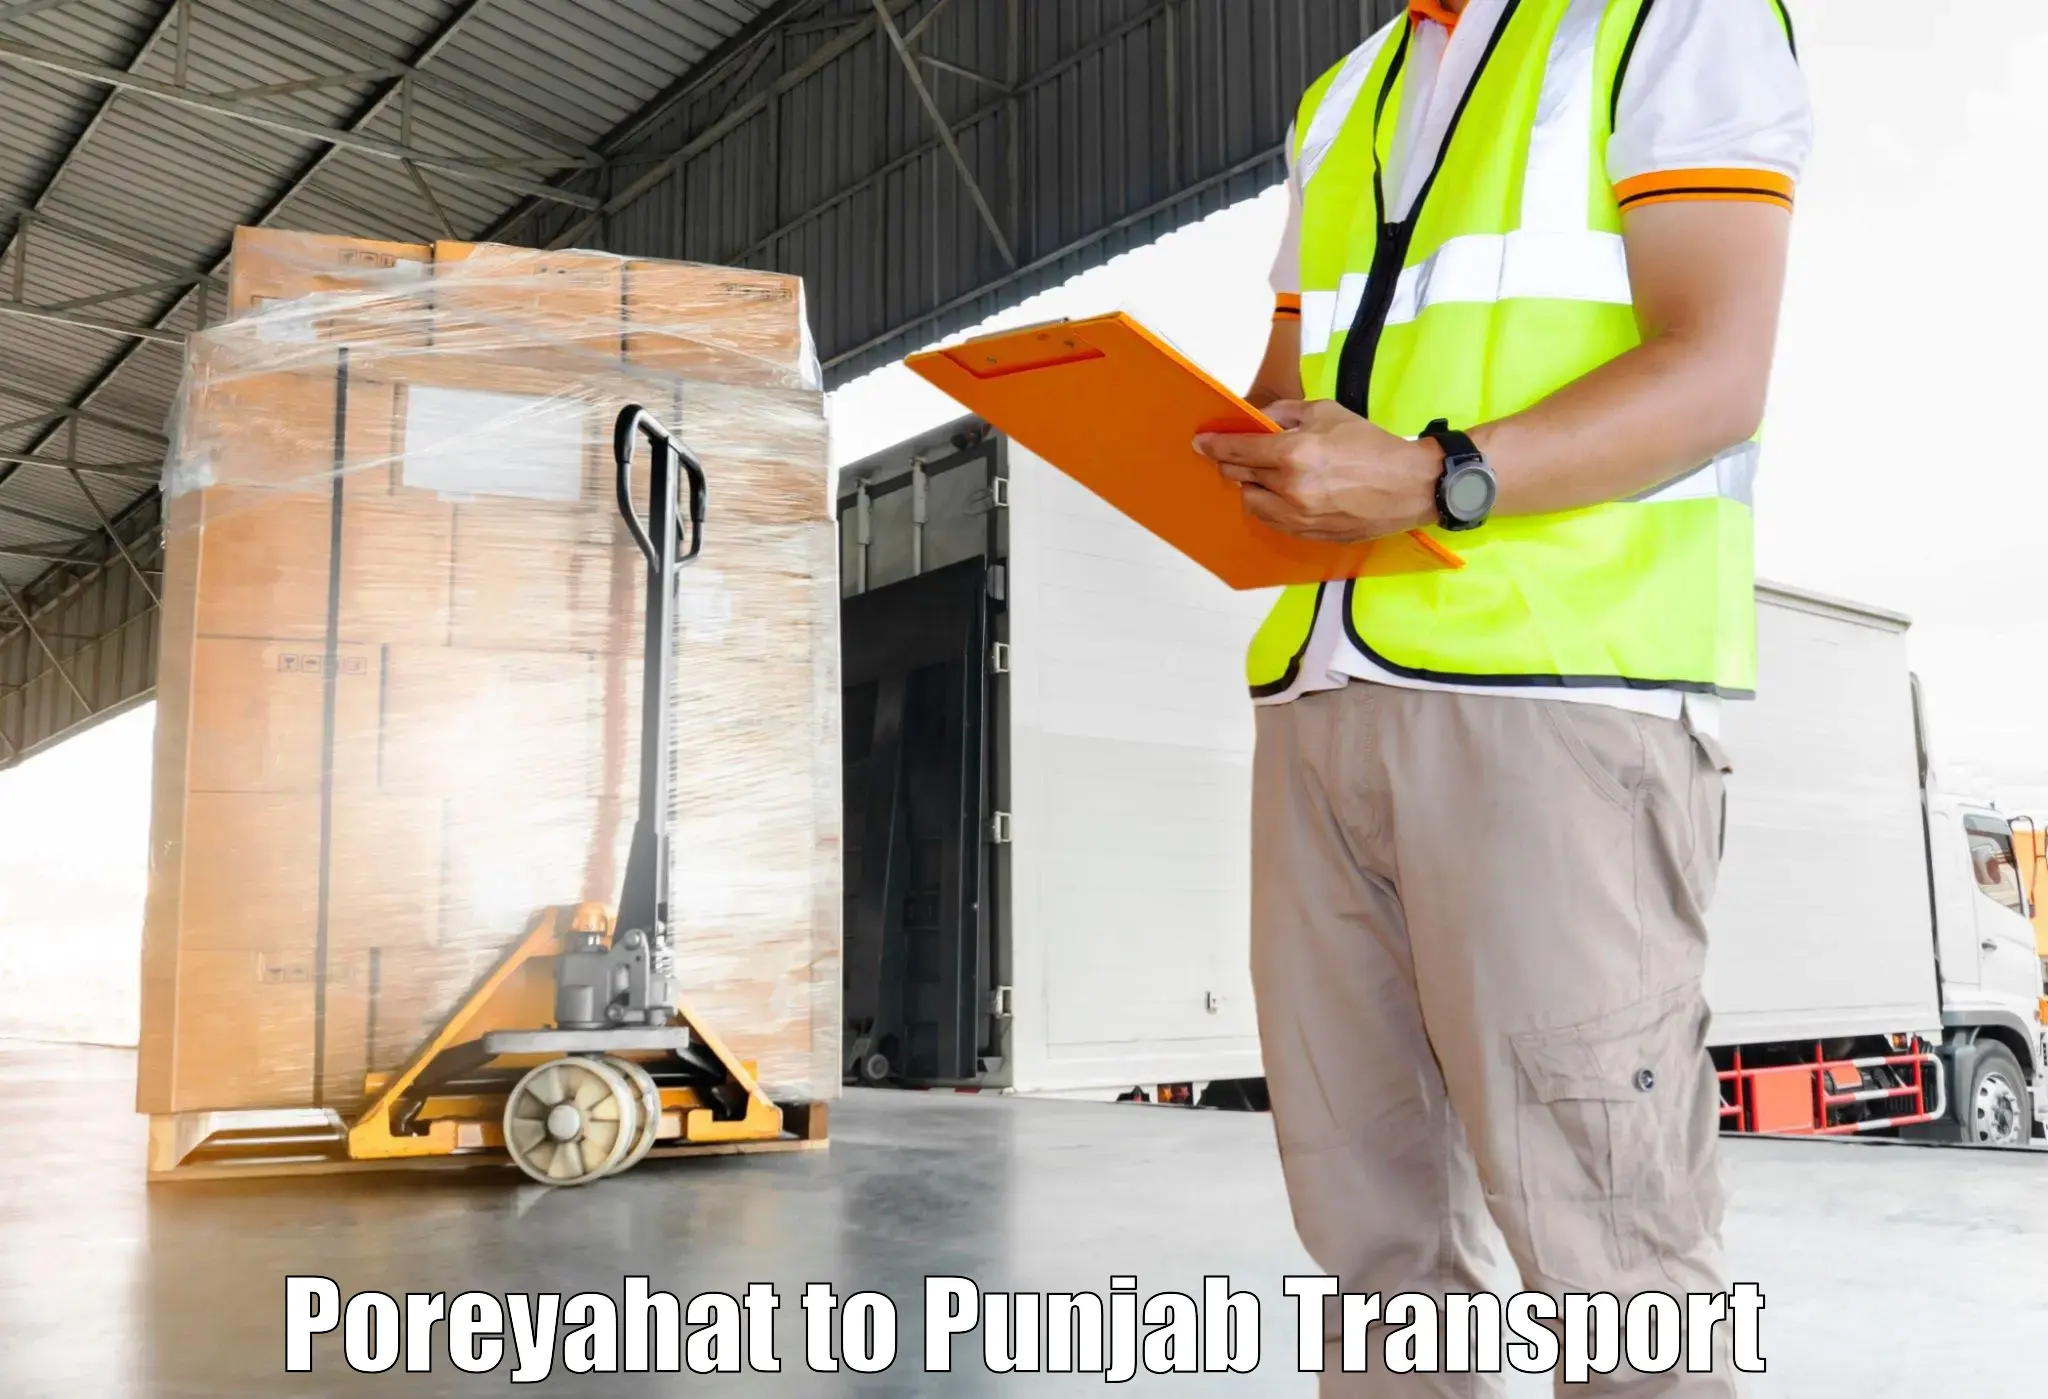 Furniture transport service Poreyahat to Jalandhar